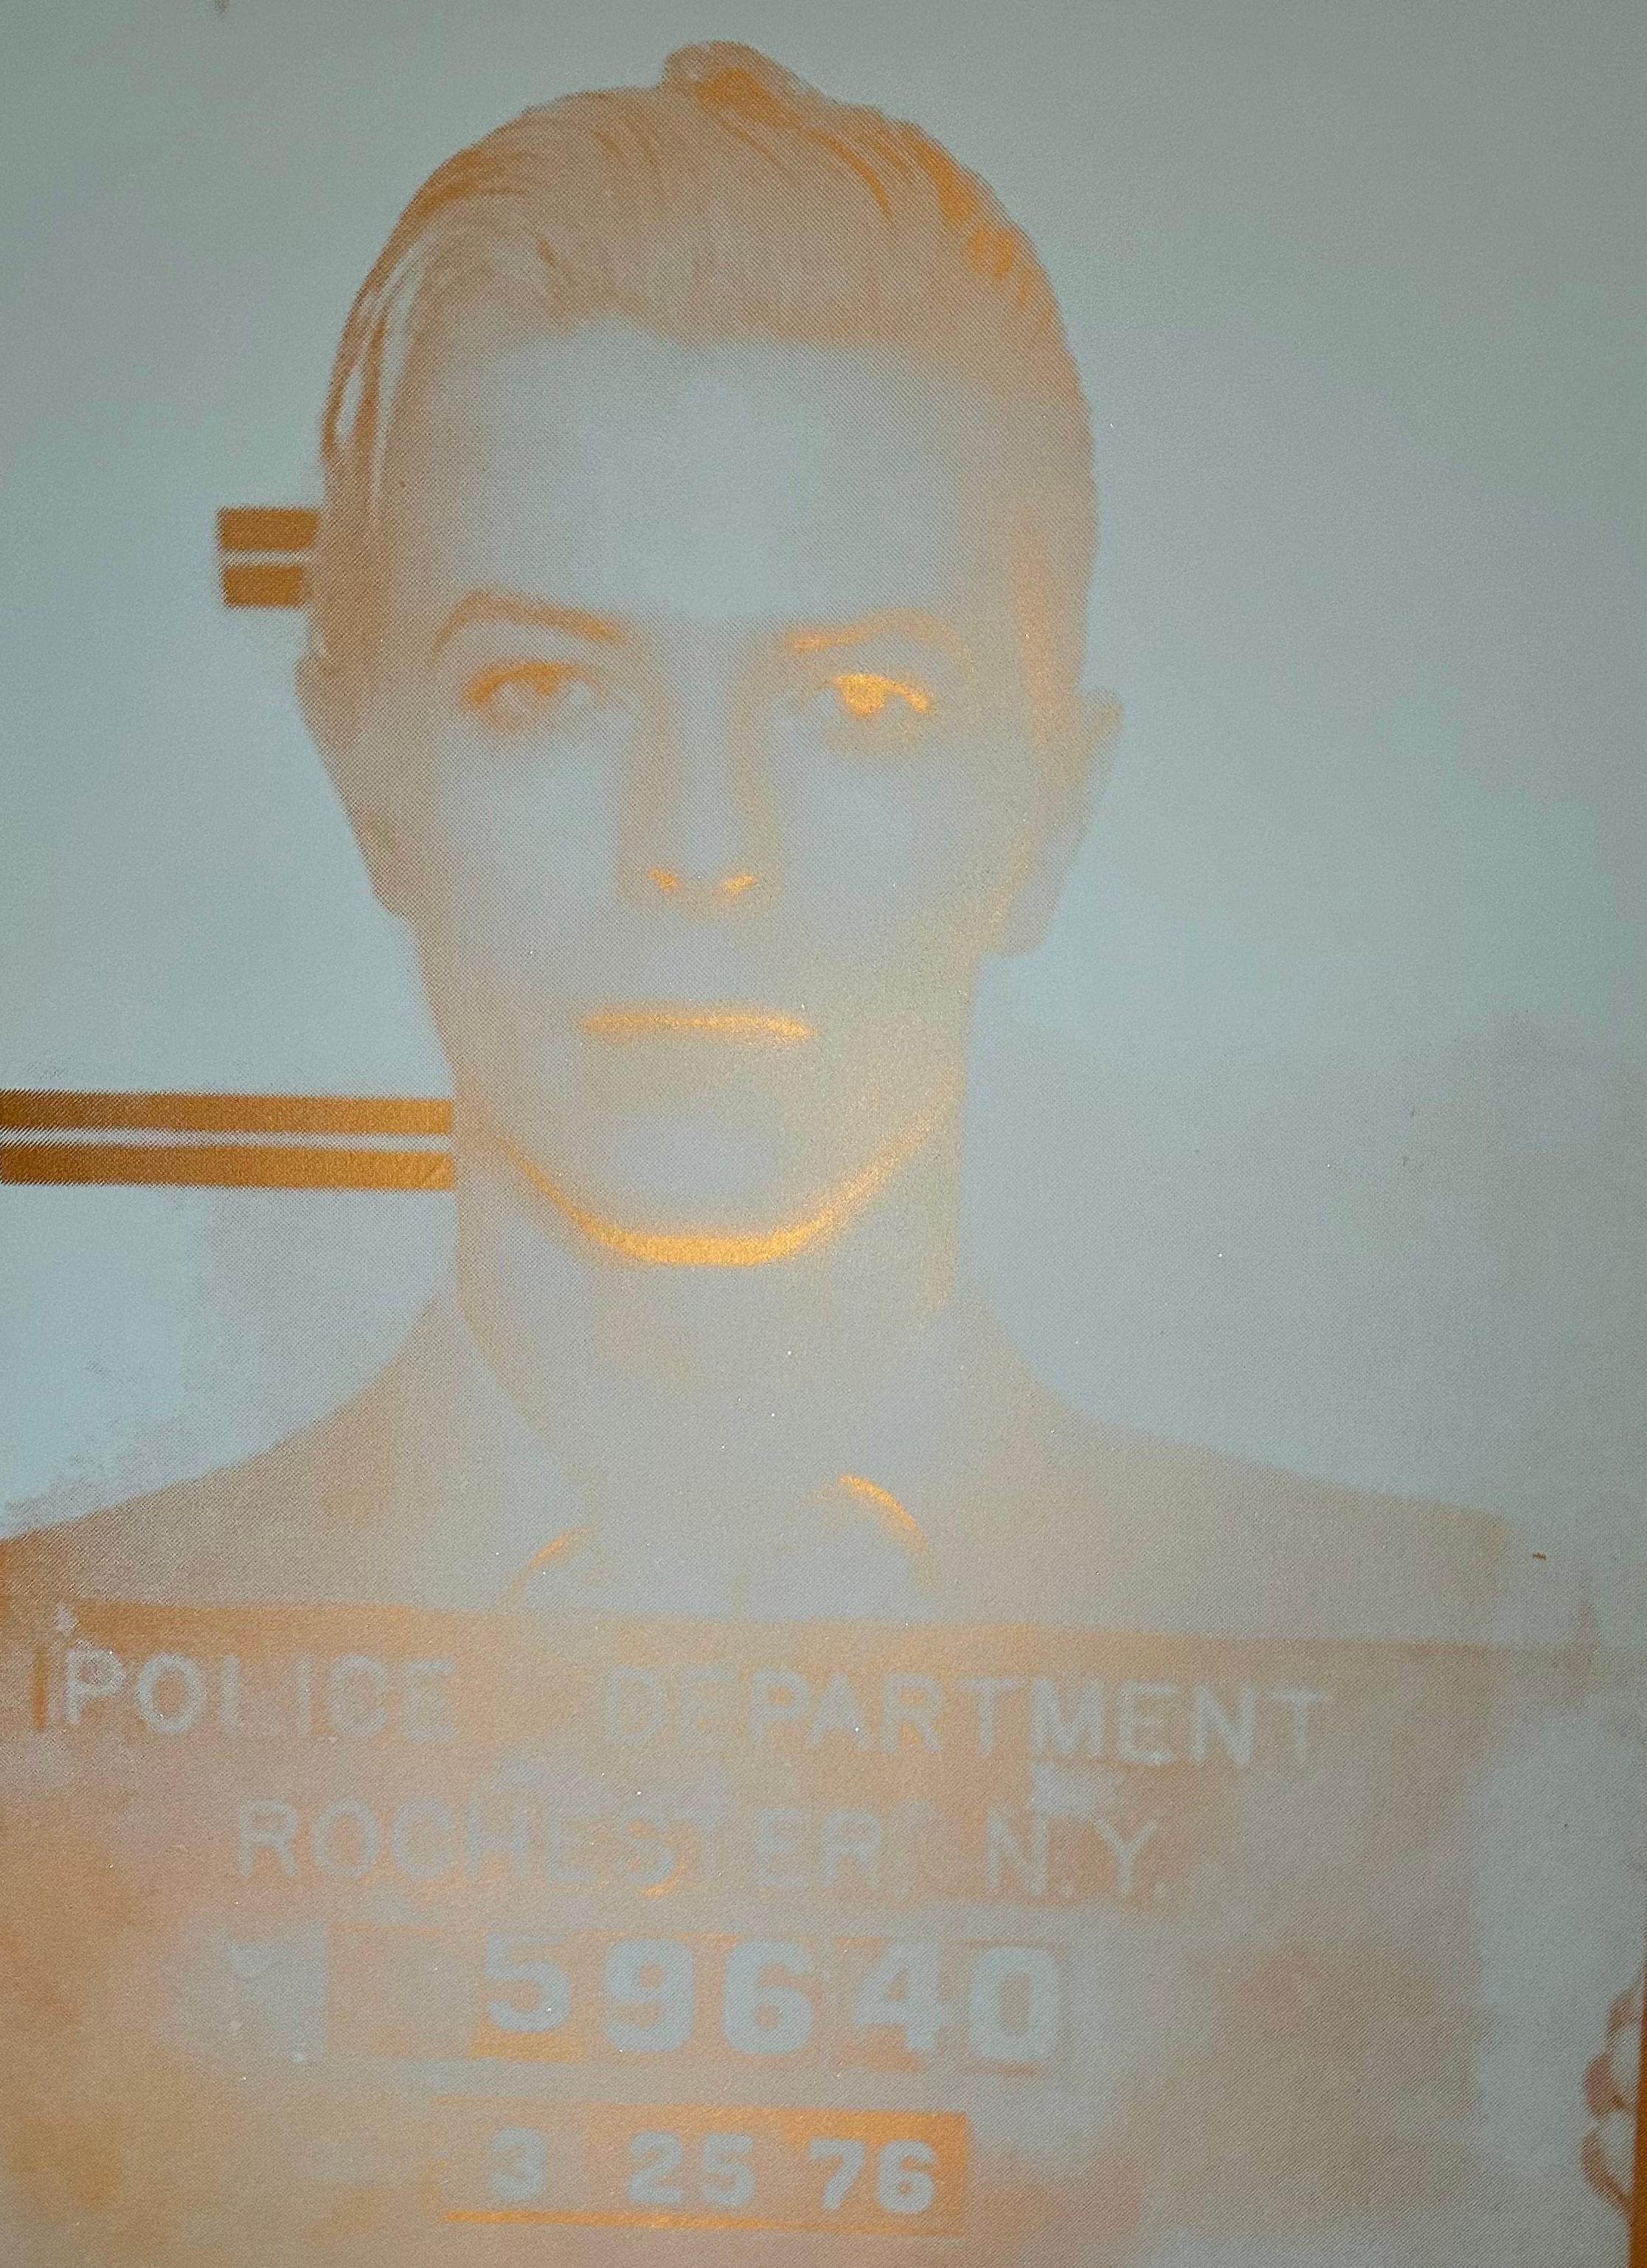 Verbrecherfoto von David Bowie.  Handgezogenes Acryl, Emaille-Siebdruck und Diamantstaub auf Leinen.   Schwebt in einem schwarzen Rahmen im zeitgenössischen Stil.  Die Sonderlackierung erzeugt einen sehr coolen Effekt, wenn sie vom Licht getroffen